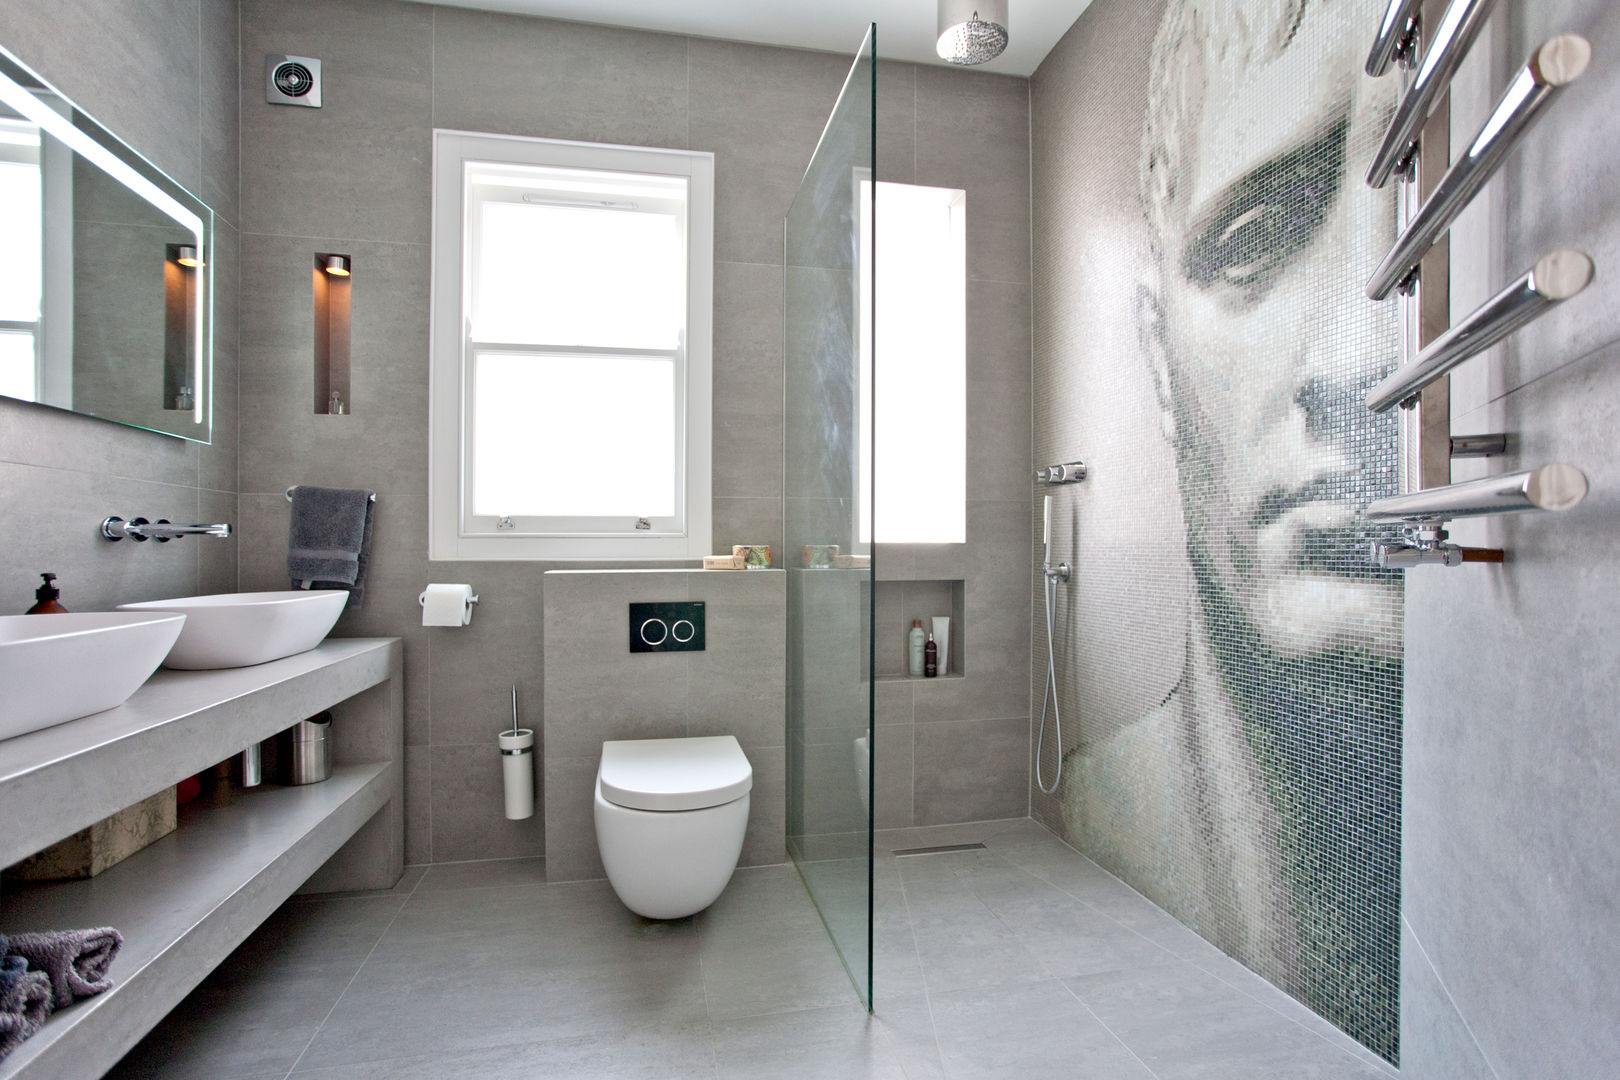 20 Badezimmer, Die Klein, Modern Und Wunderschön Sind | Homify with regard to Modernes Badezimmer Klein